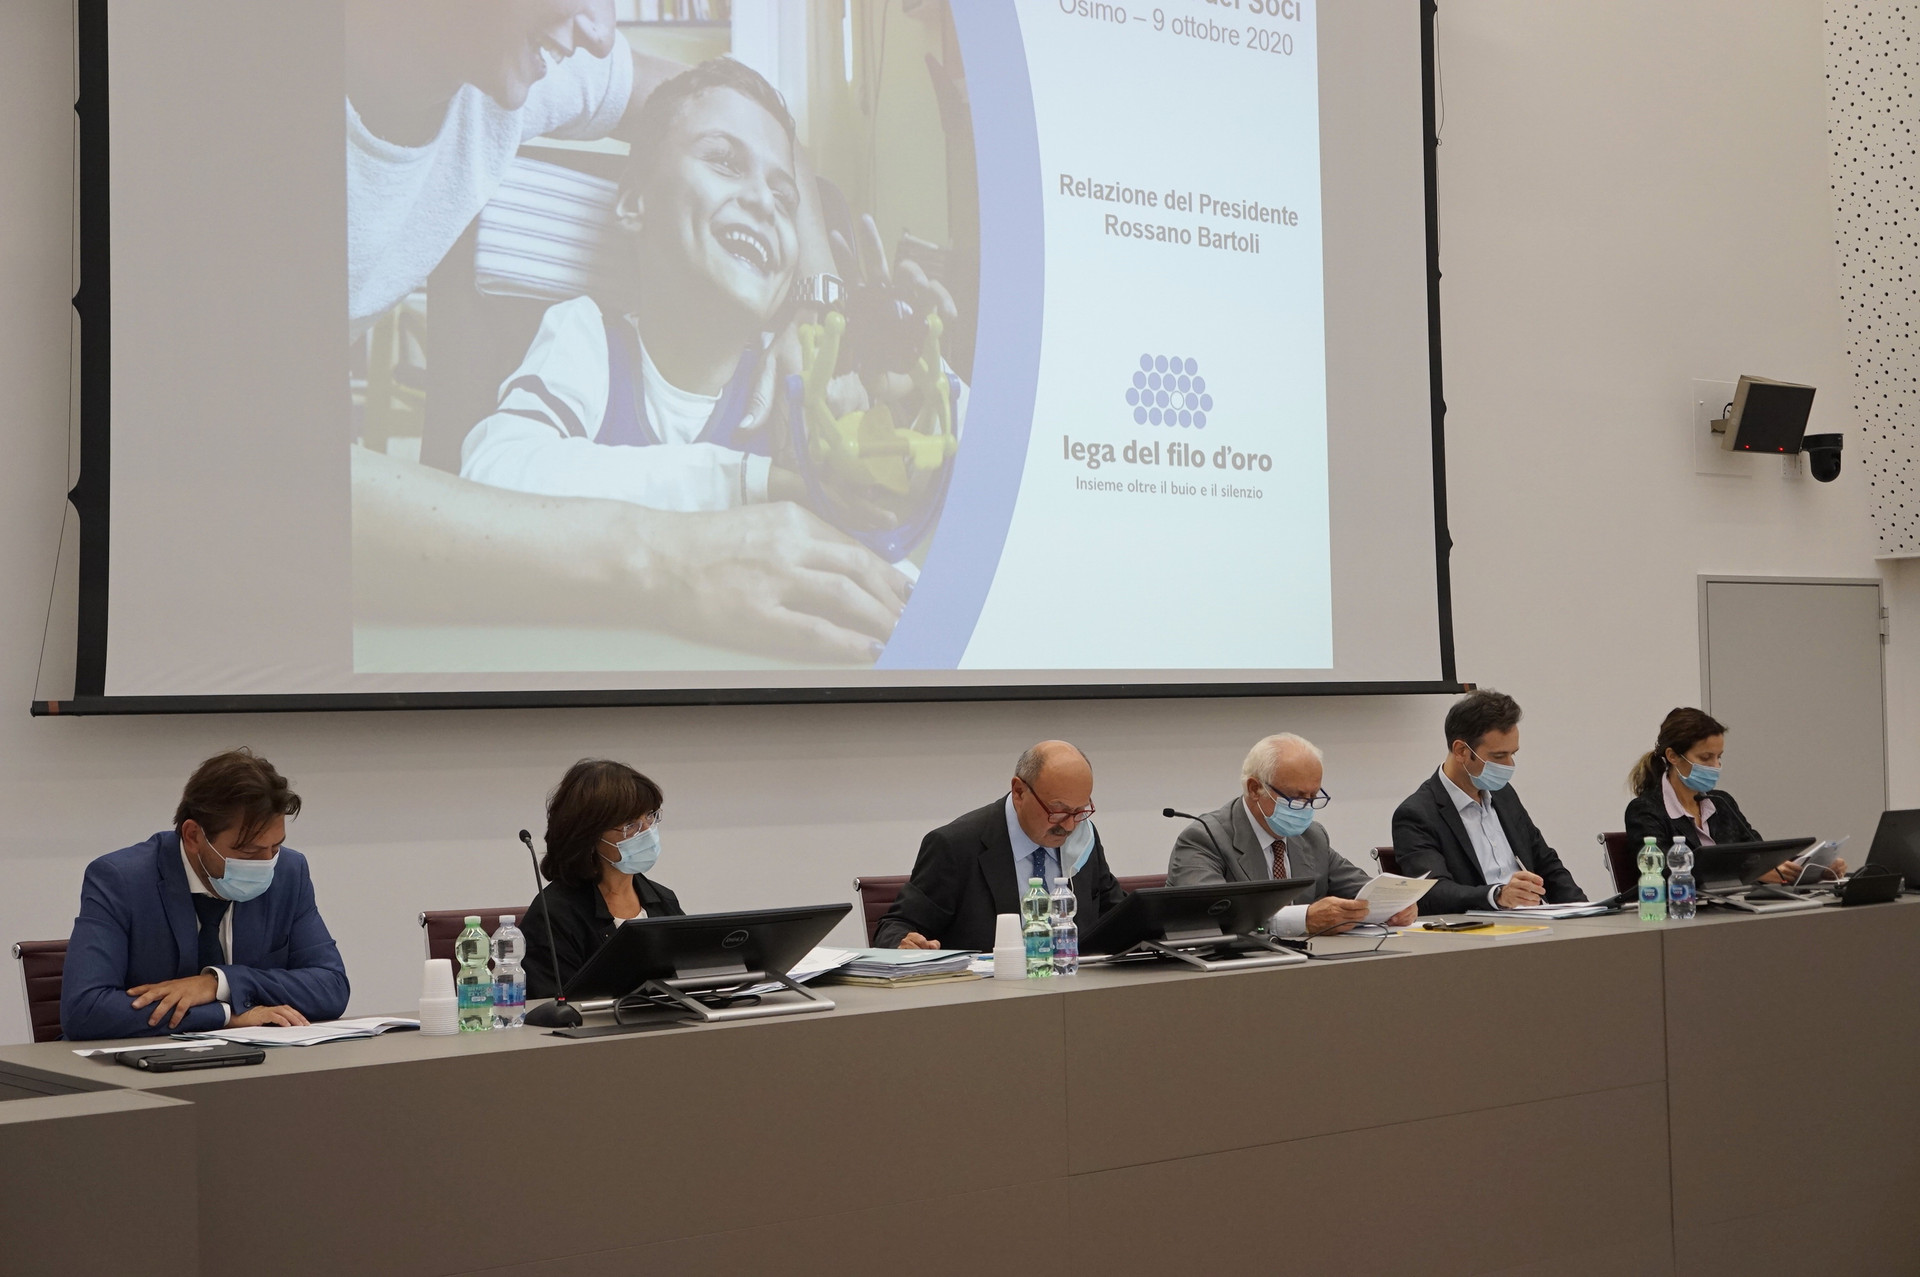 Cinque persone tra cui il Presidente Bartoli parlano ad una sala, mentre dietro di loro sono proiettate immagini di una presentazione.